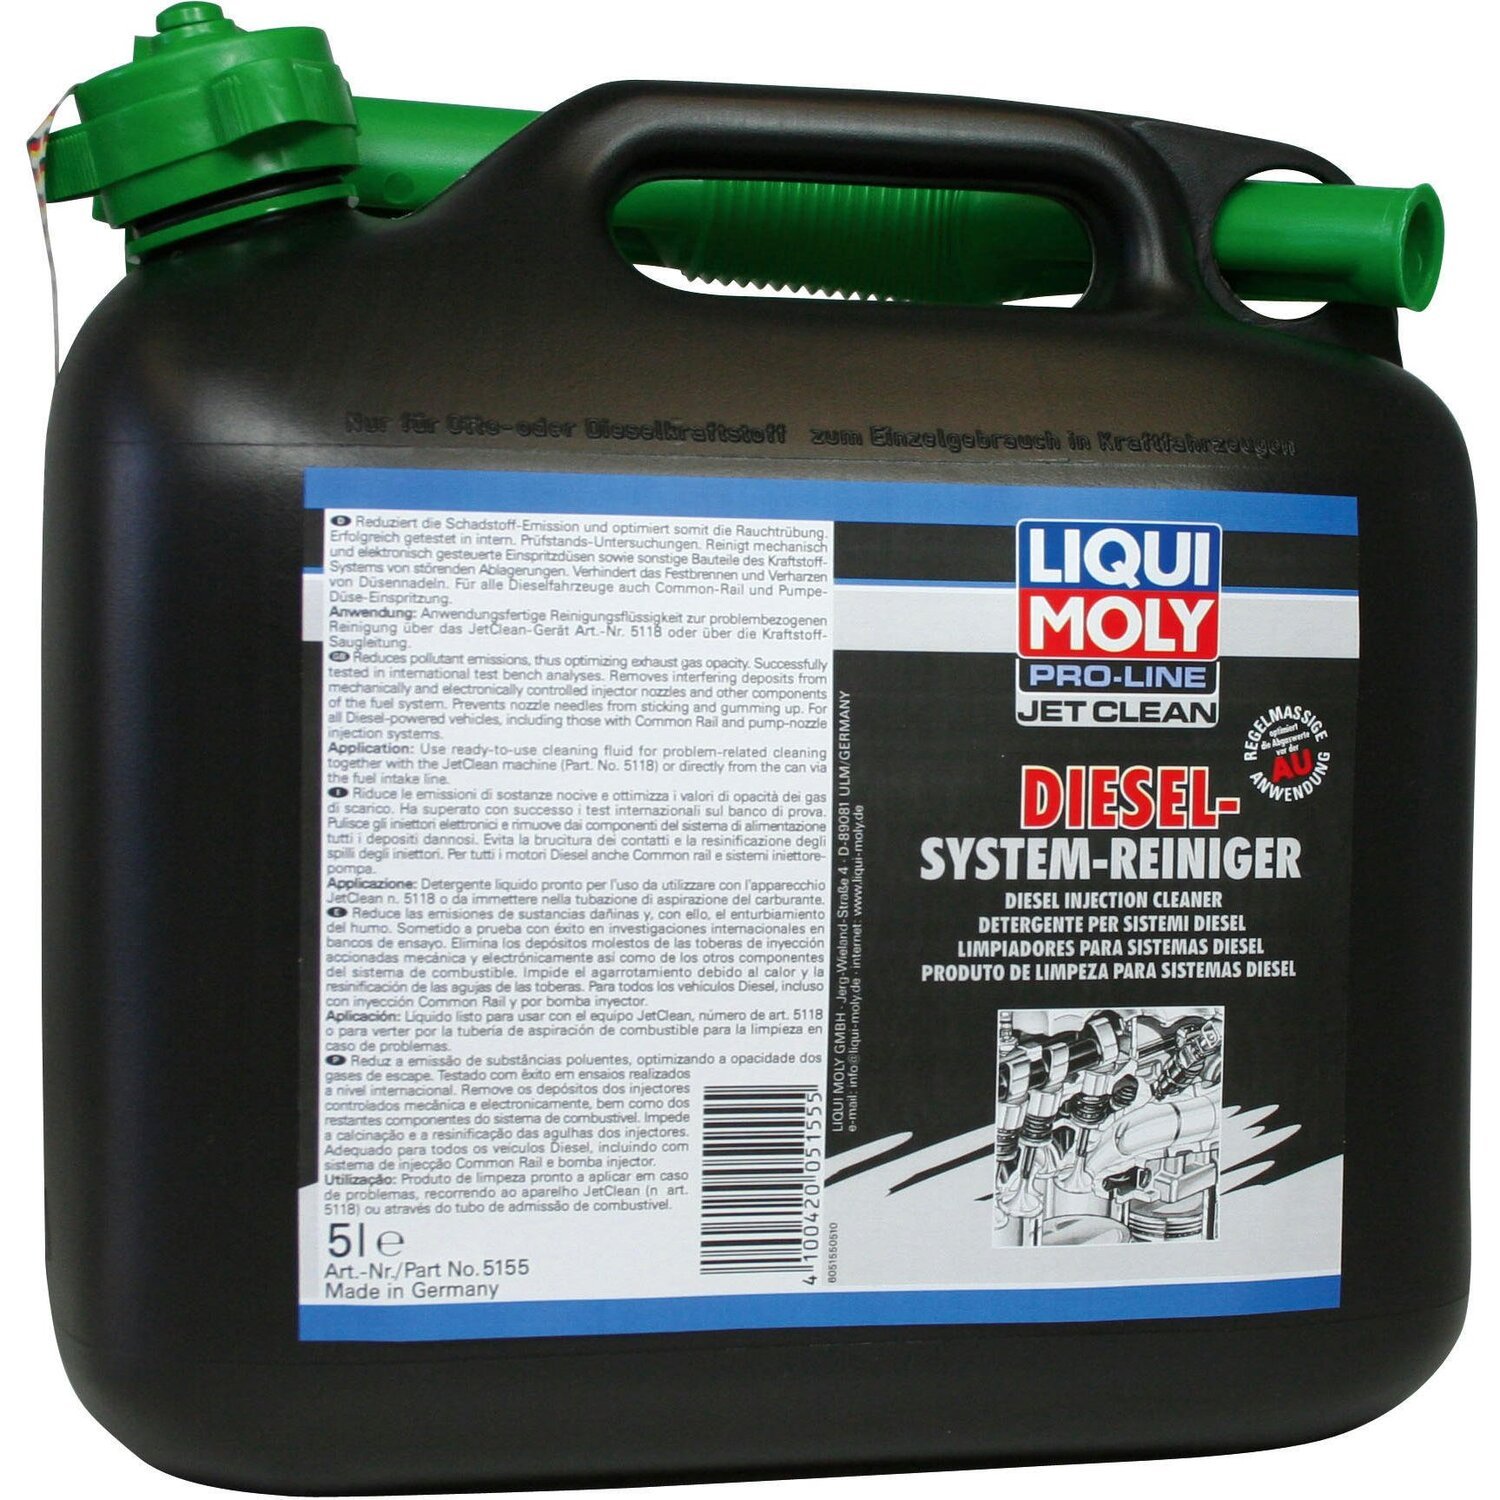 Очиститель Liqui Moly для дизельных топливных систем Pro-Line Jetclean Diesel-System-Reiniger 5л (4100420051555) фото 